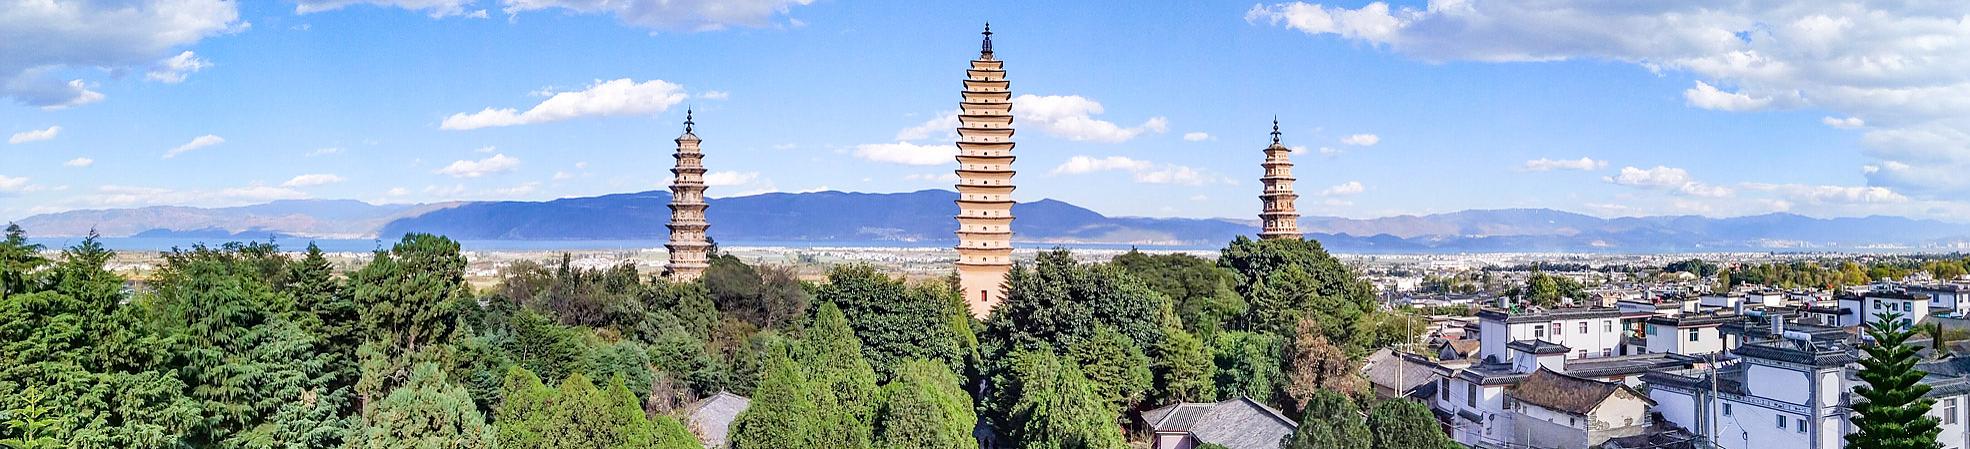 Yunnan Travel Tips and FAQs